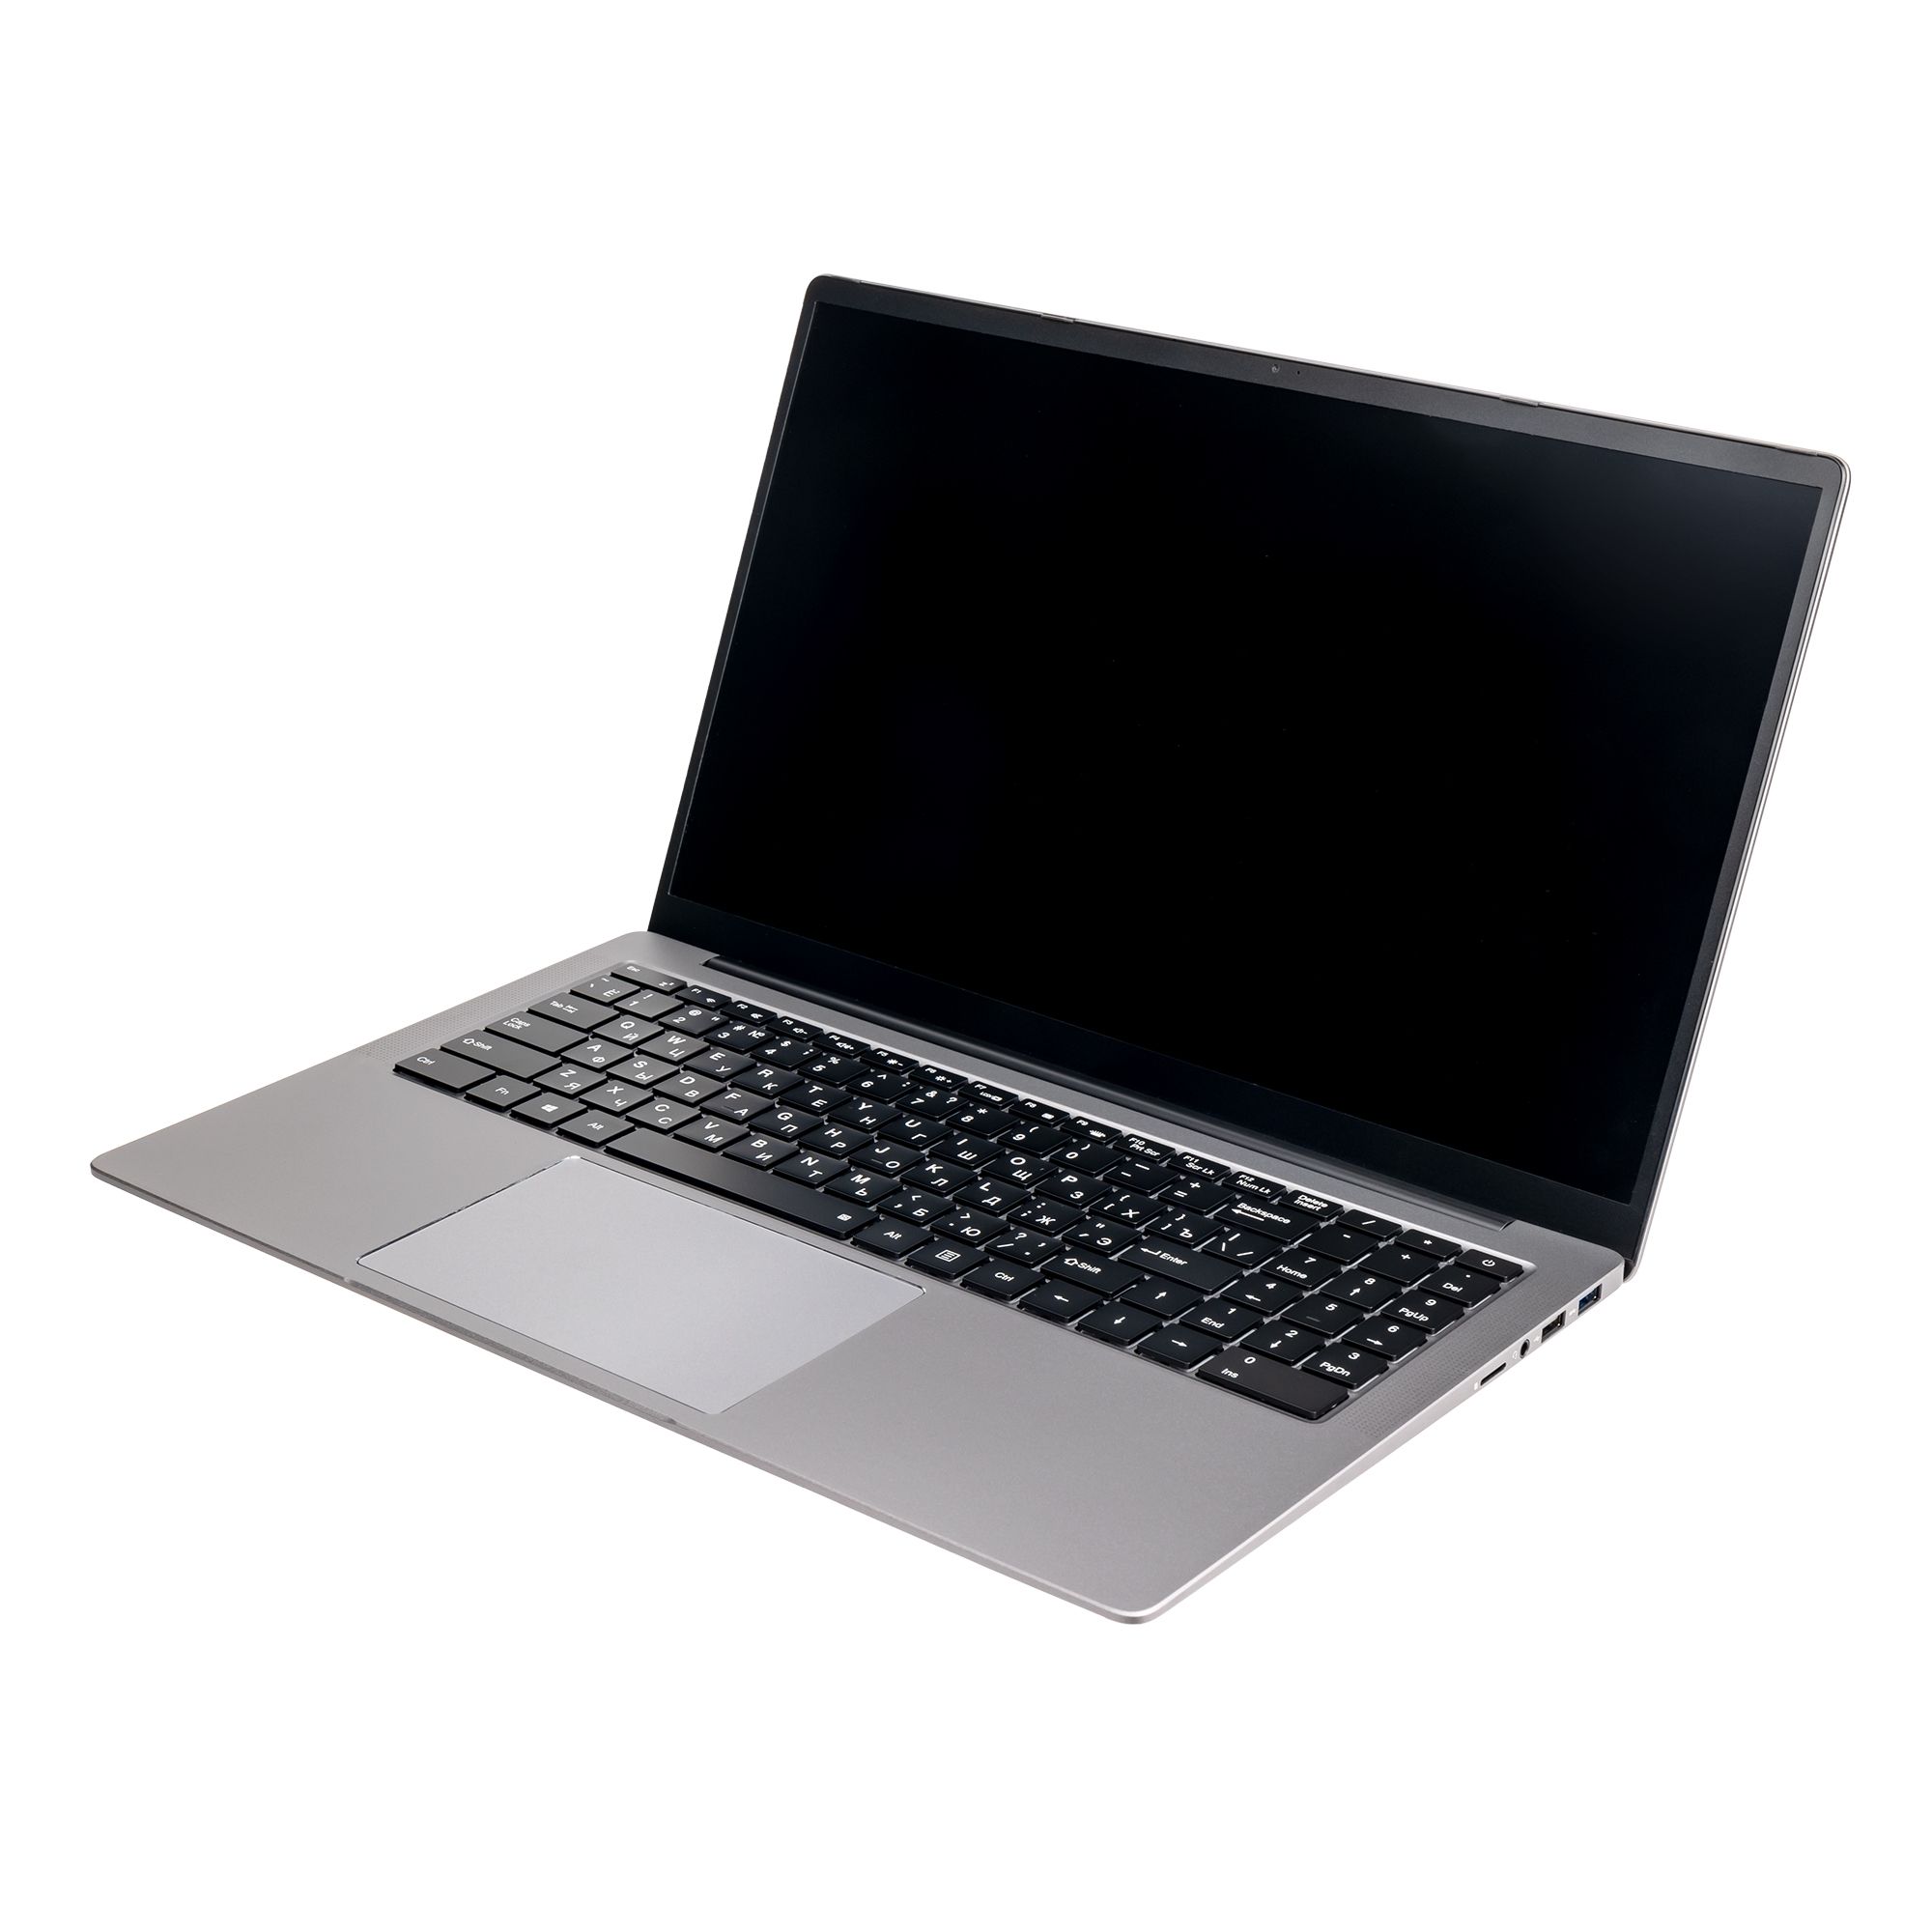 Ноутбук Hiper Expertbook MTL1601 (MTL1601D1235UDS) ноутбук hiper expertbook mtl1601 mtl1601a1235uds